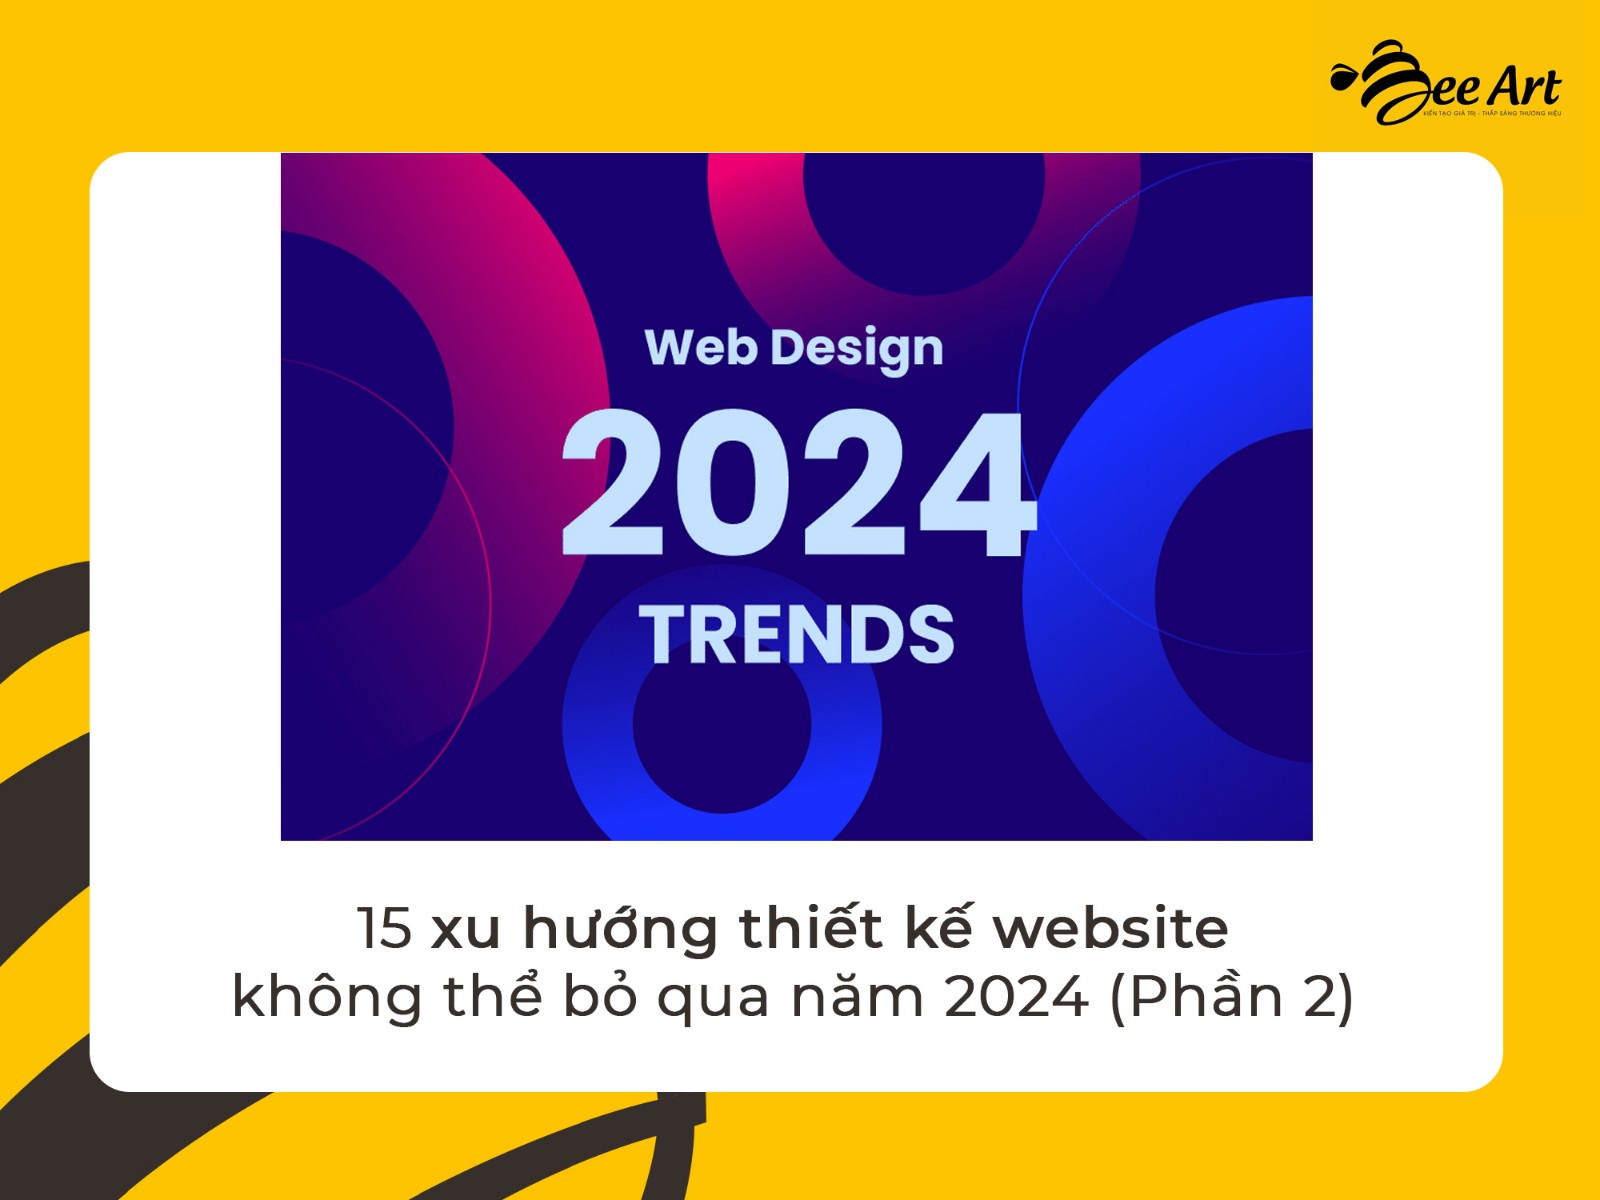 xu hướng thiết kế website 2024 1.jpg